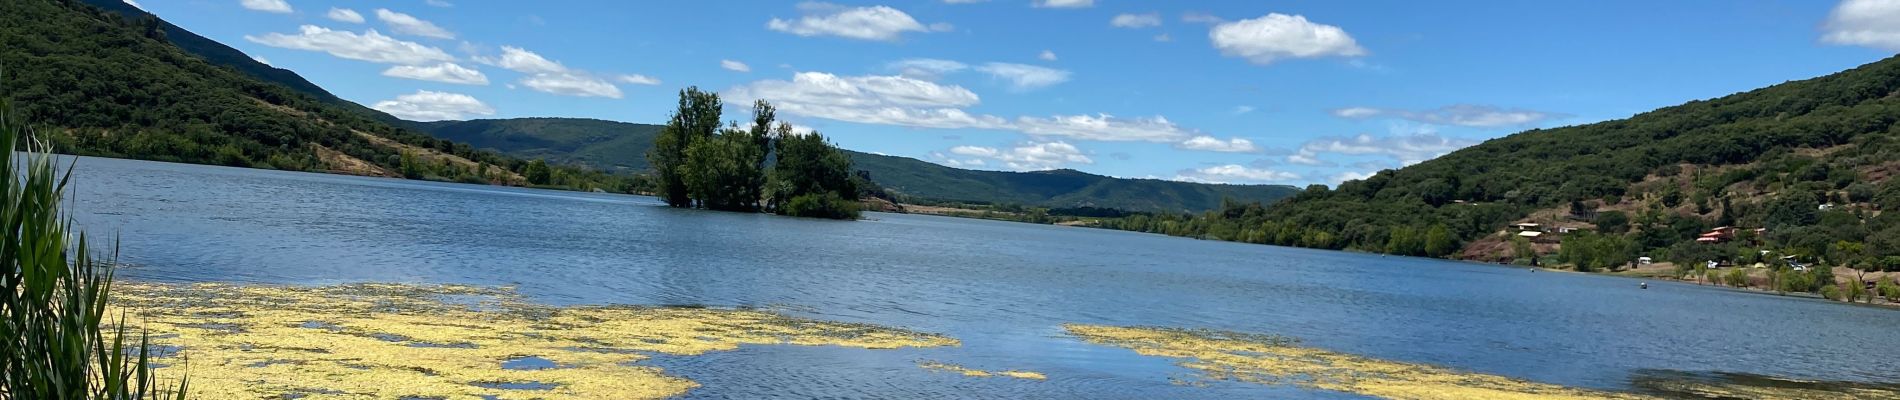 Percorso Marcia Clermont-l'Hérault - LSG lac Salagou juin 2020 -1 - Photo